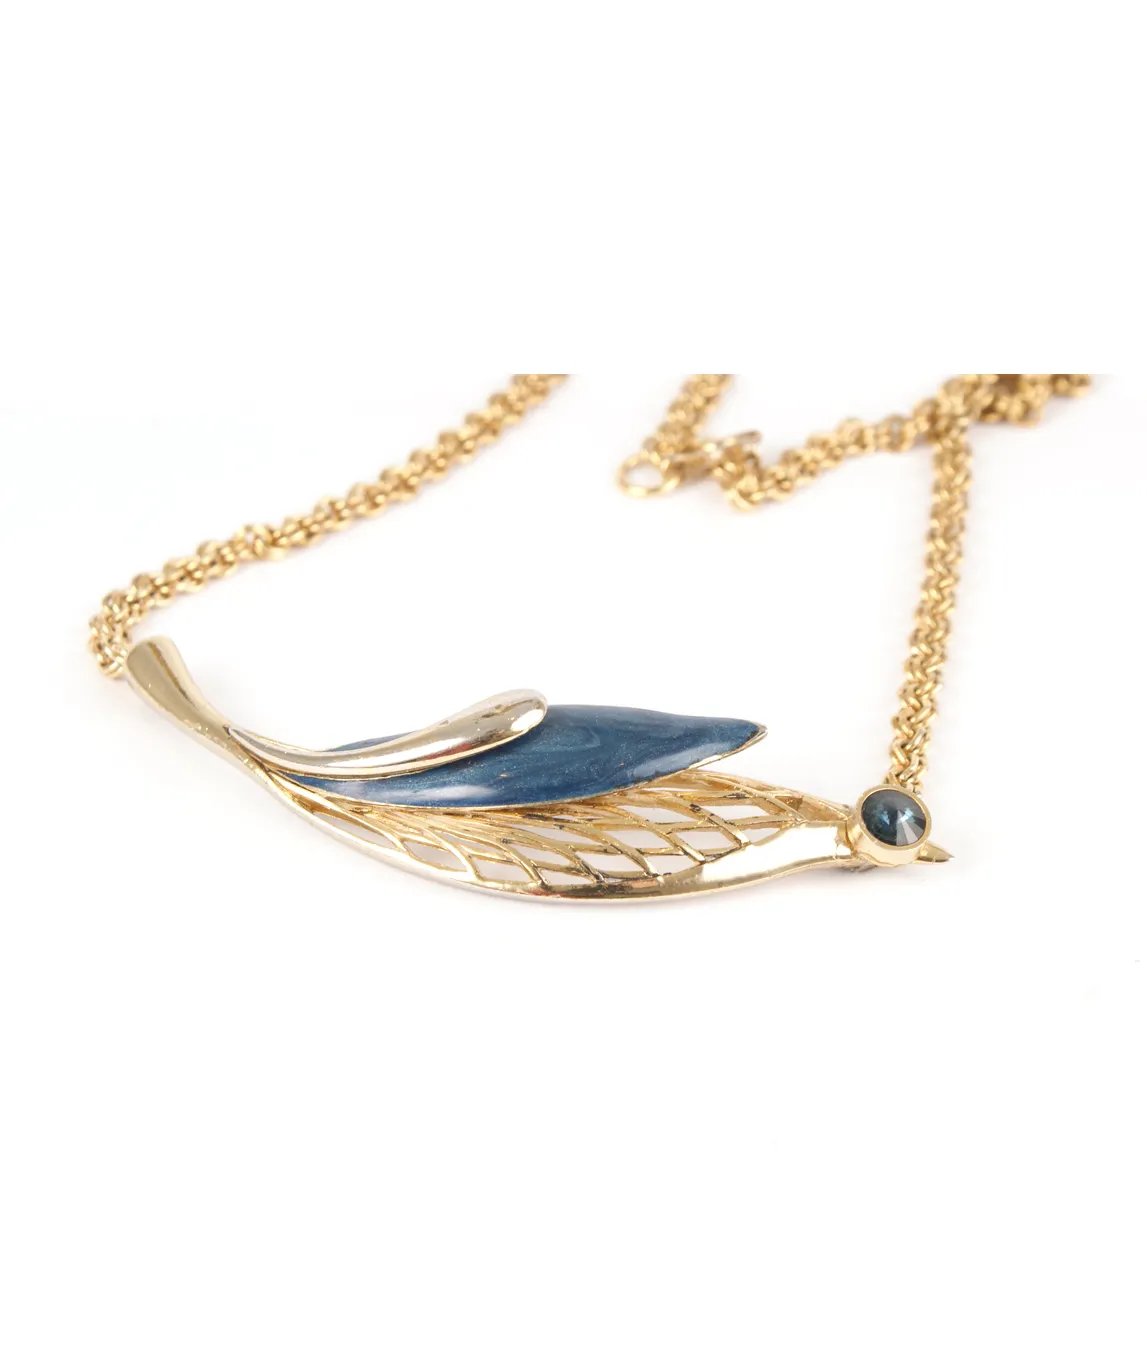 Balenciaga blue and gold necklace